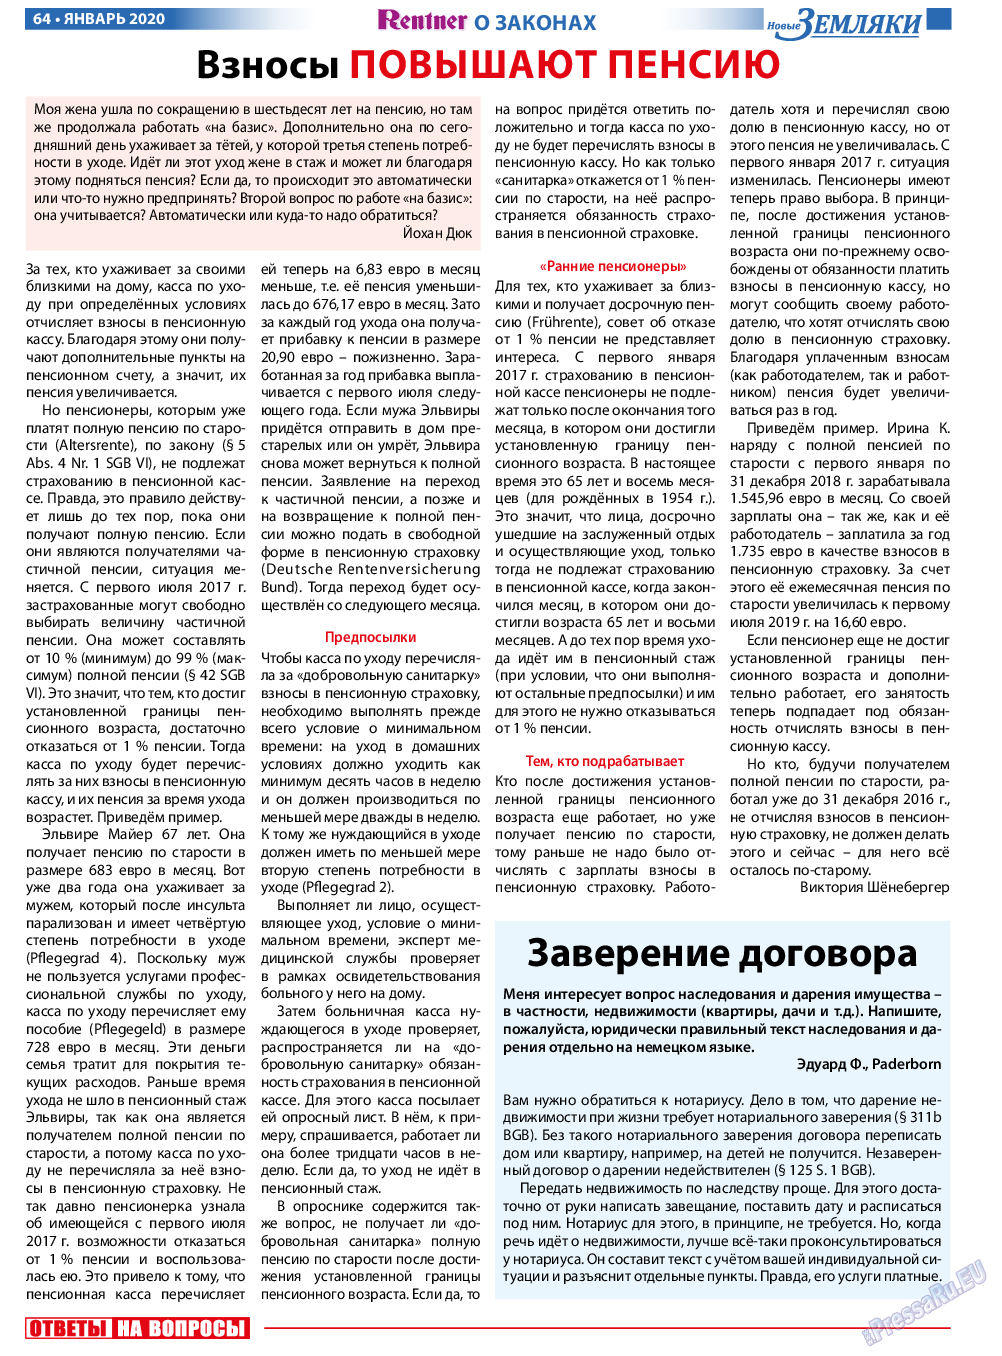 Новые Земляки, газета. 2020 №1 стр.64